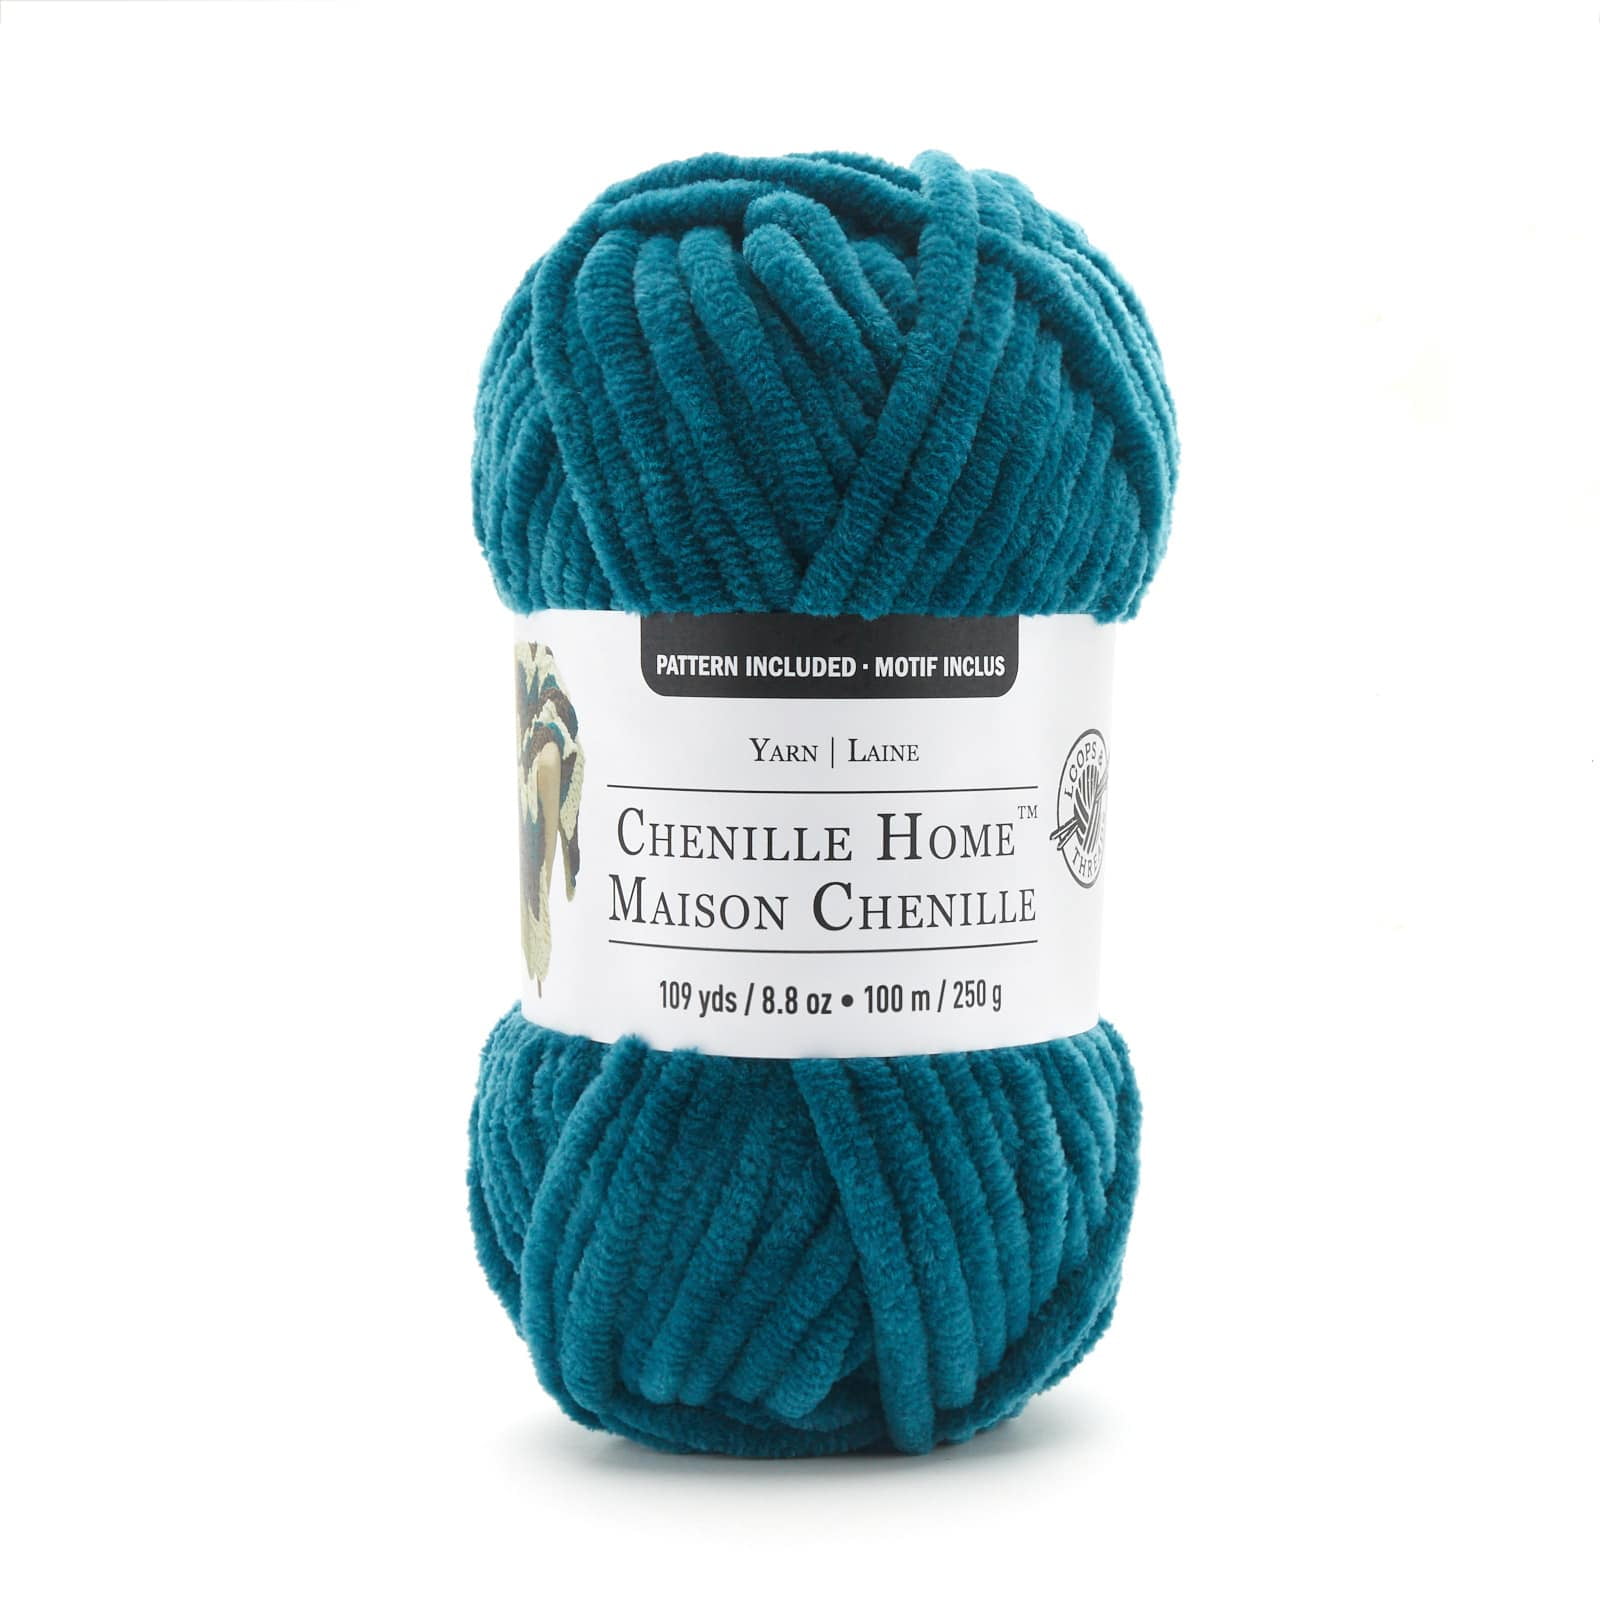 Cuddly Chenille Eco™ Yarn by Loops & Threads™